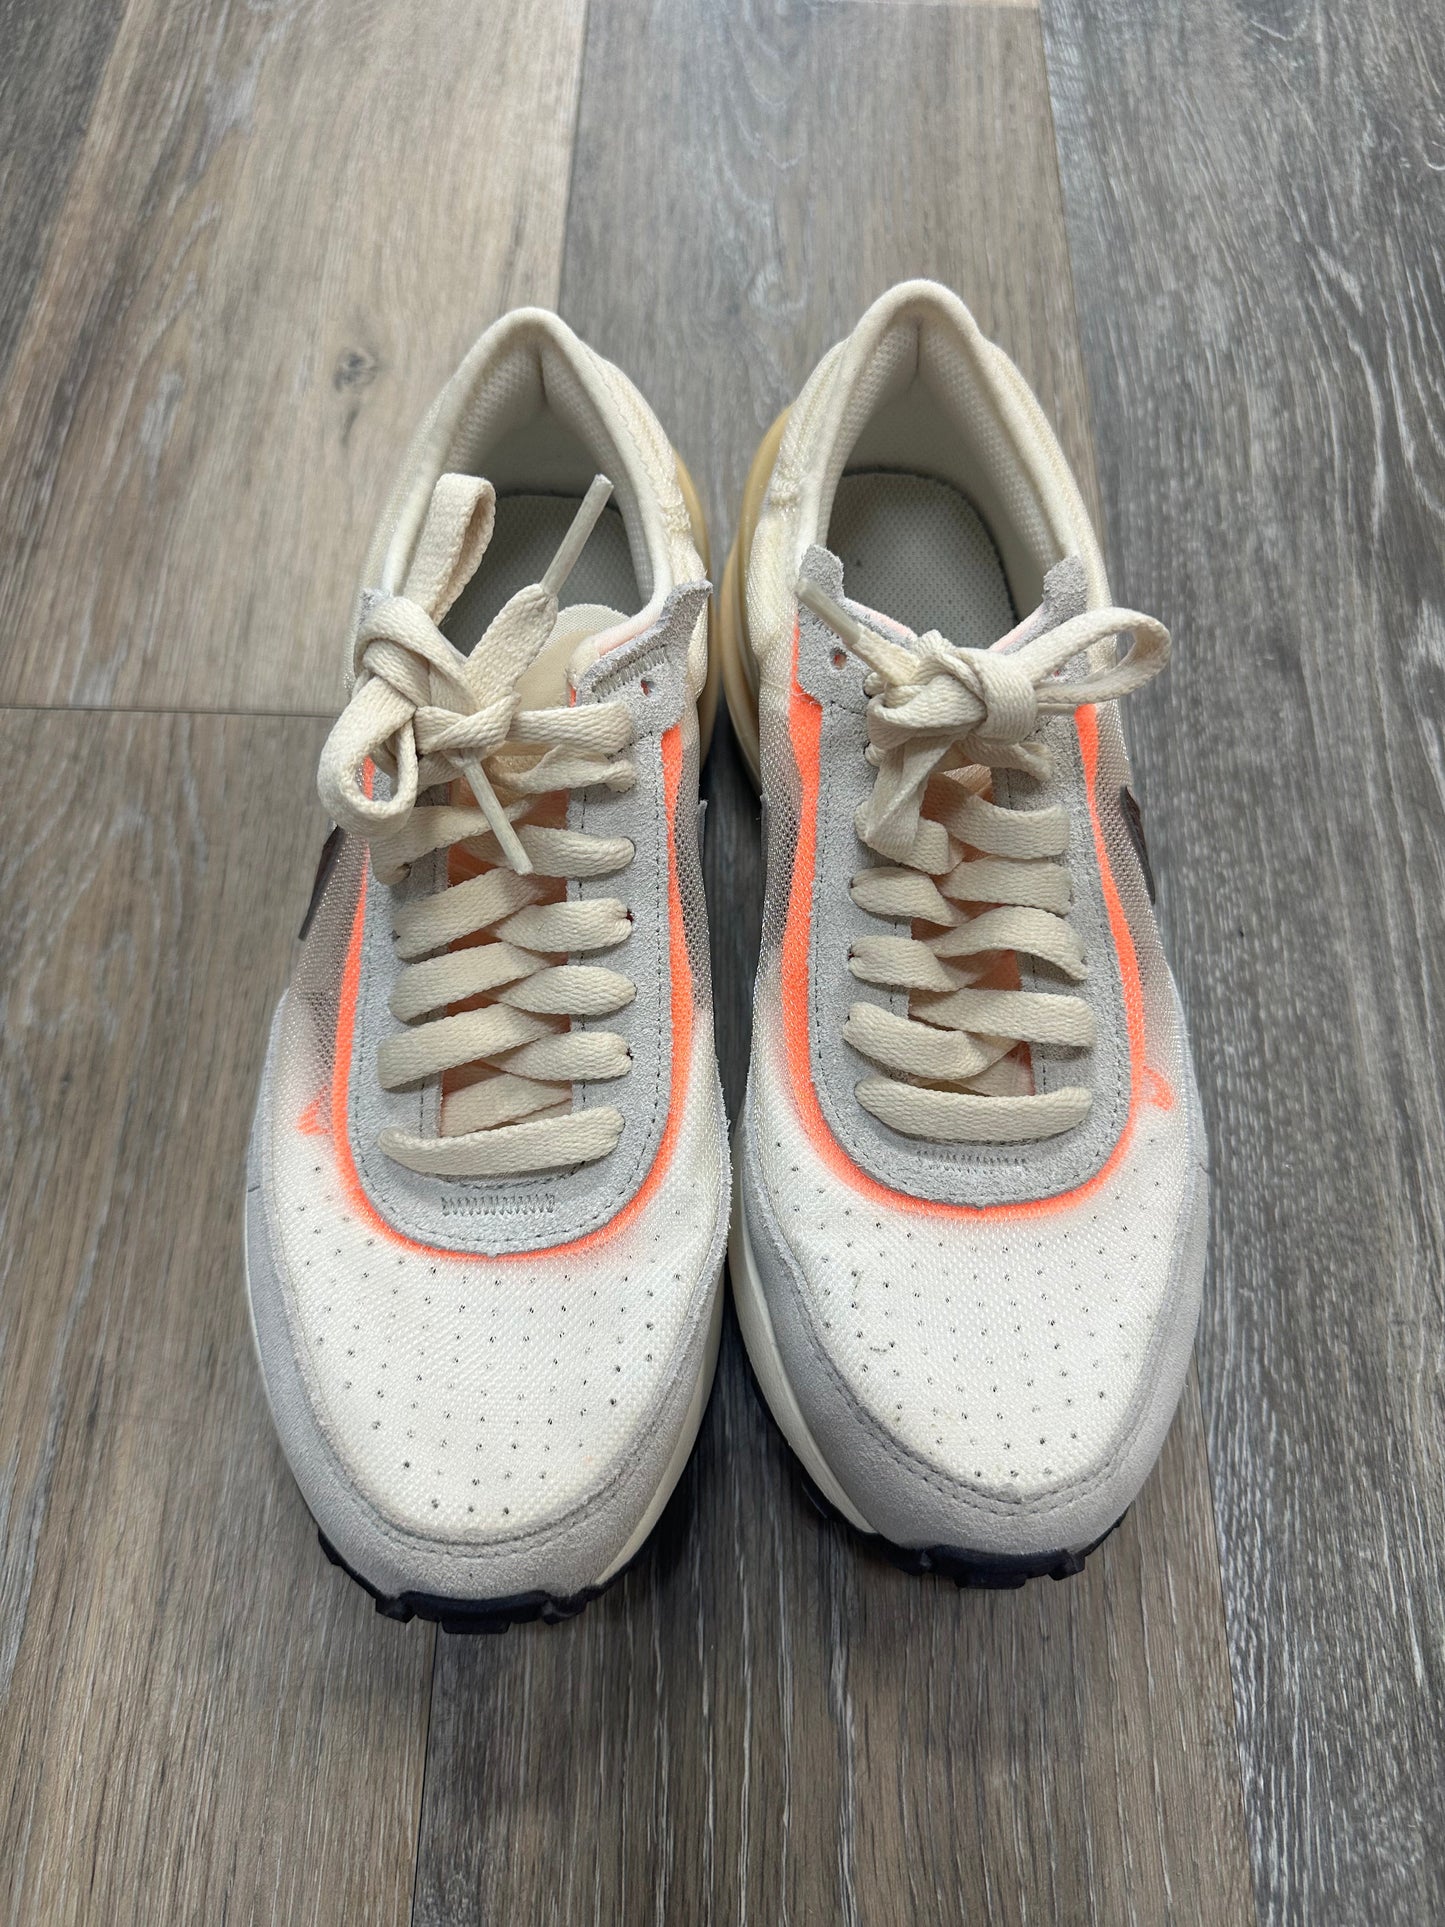 Cream Shoes Athletic Nike, Size 6